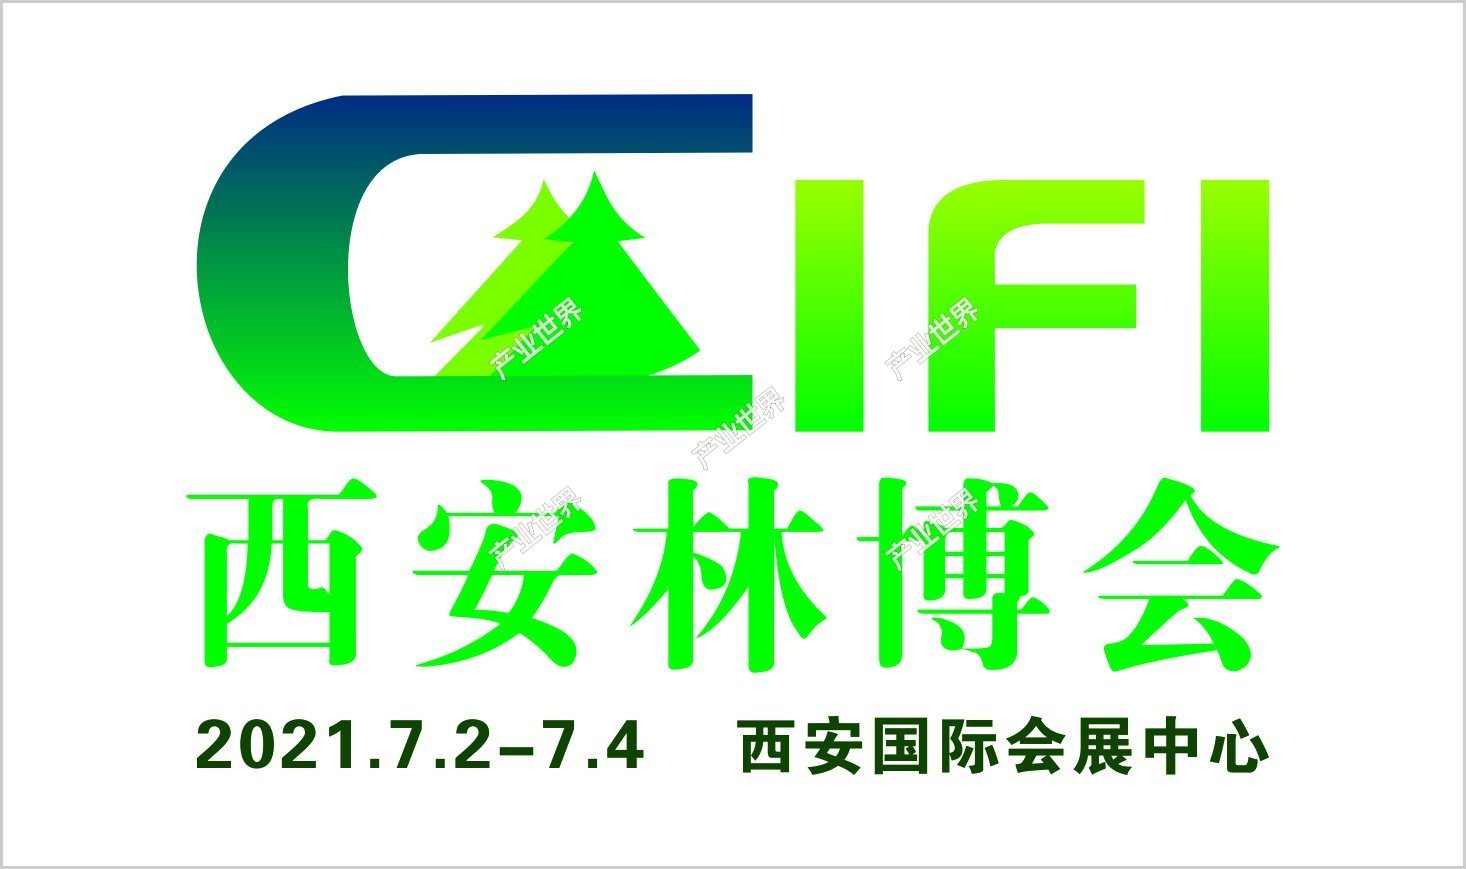 2021中国（西安）国际林业博览会暨林业产业峰会